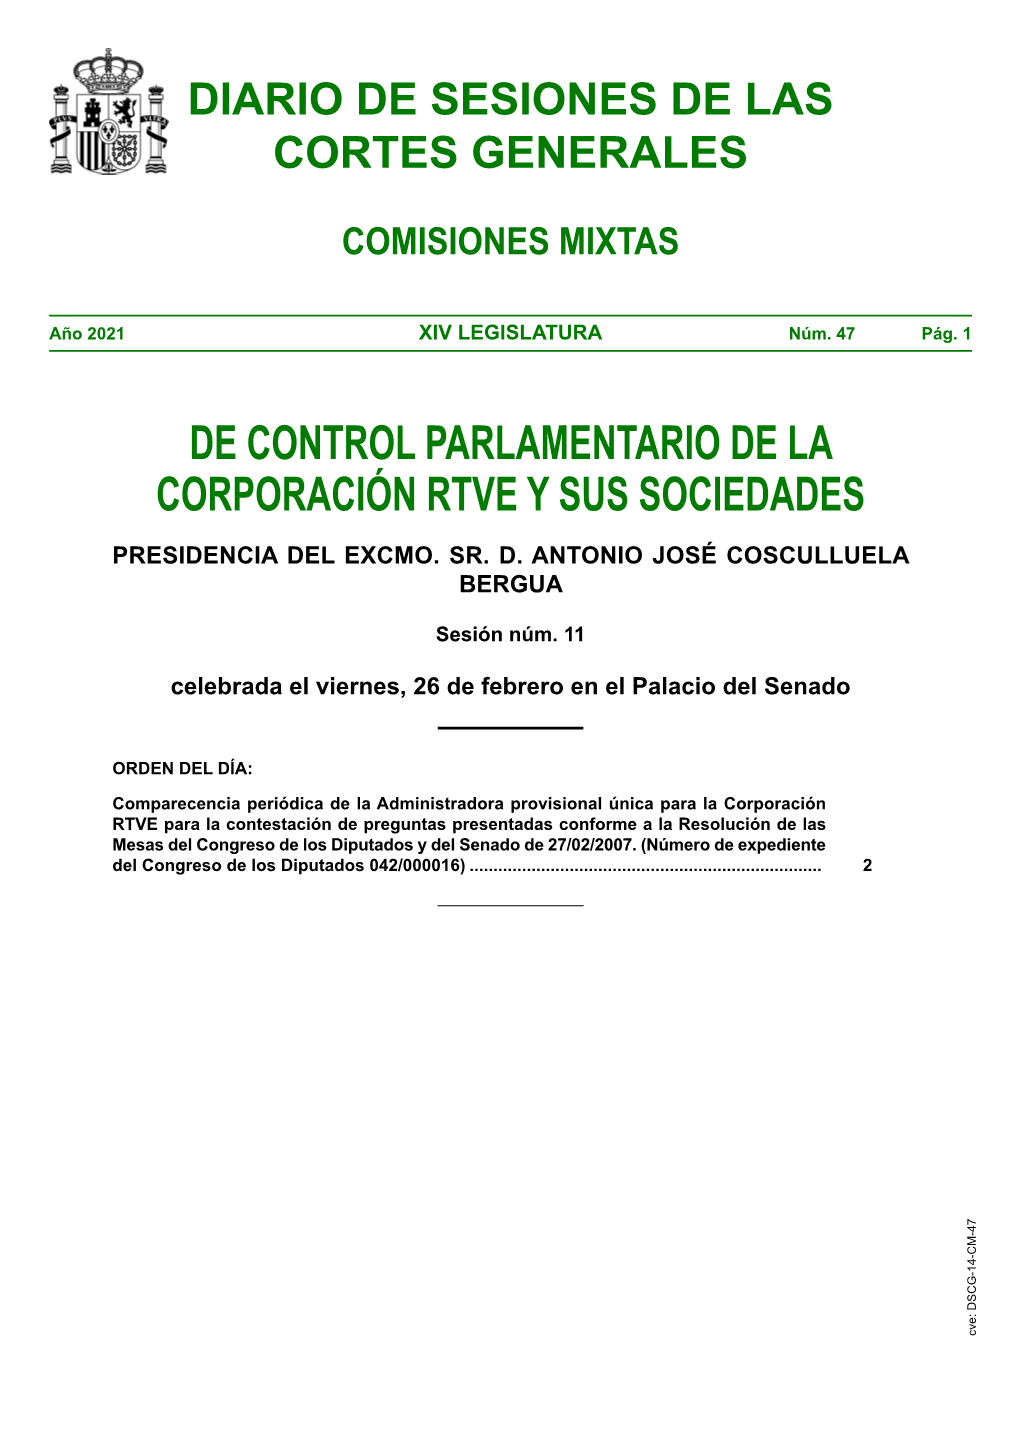 Diario De Sesiones De Comisiones Mixtas De Control Parlamentario De La Corporacion RTVE Y Sus Sociedades